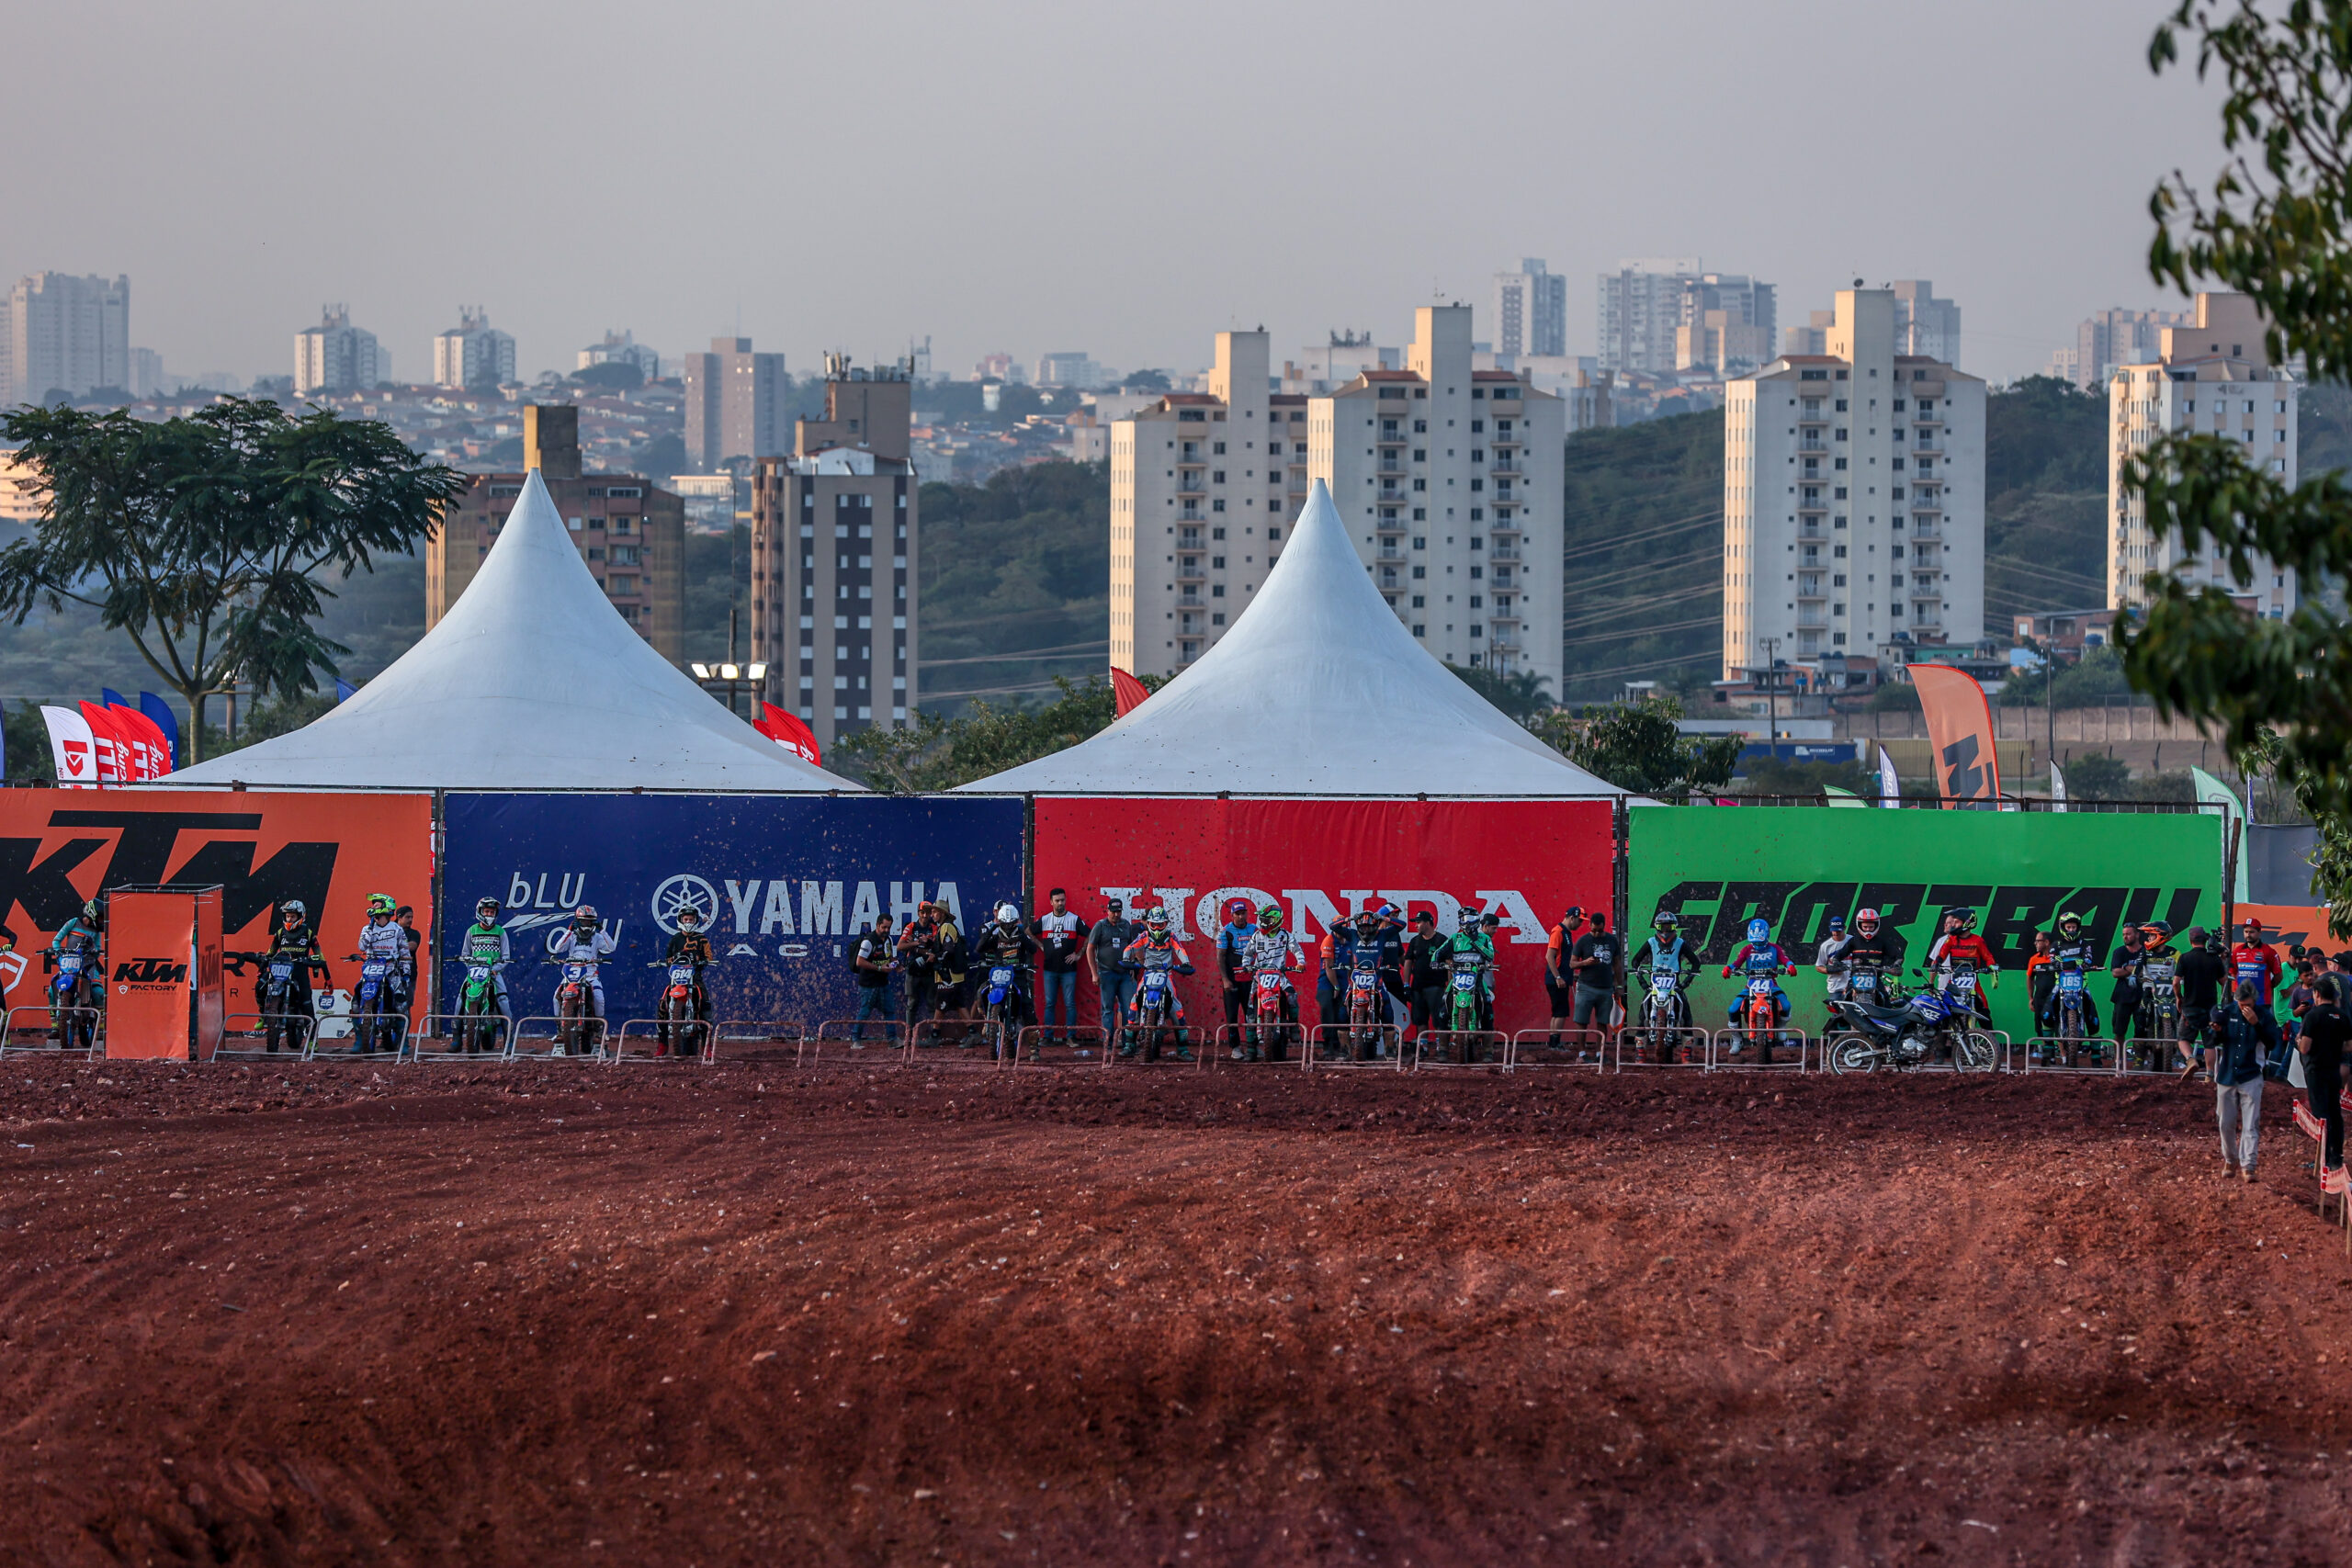 Festival Interlagos confirma edição 2023 com as principais marcas de motos  - 10/08/2022 - UOL Carros